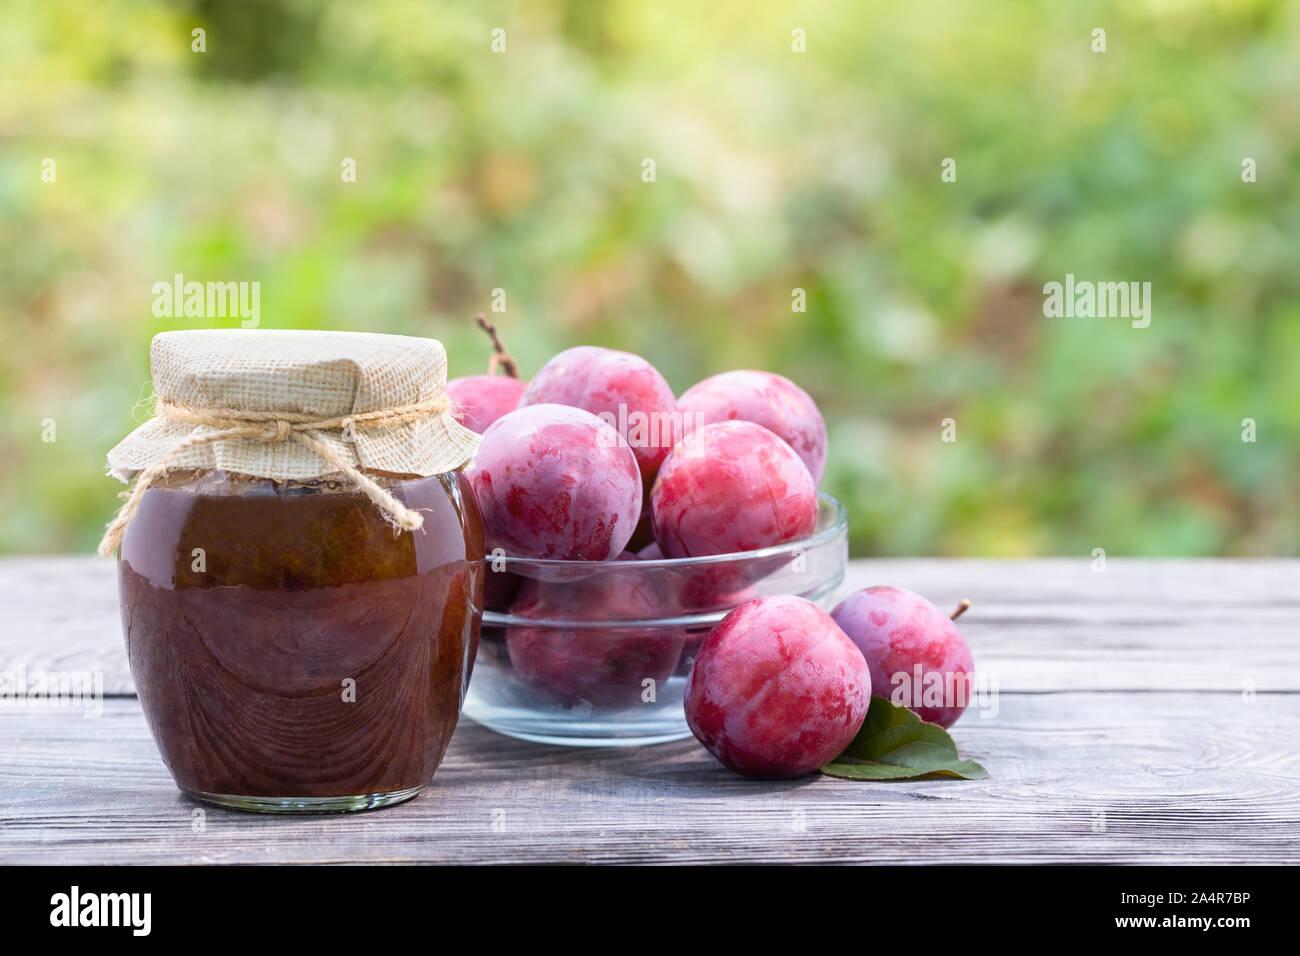 Les prunes dans un bol transparent et pot de confiture de prunes sur la table en bois. Fond vert naturel Banque D'Images